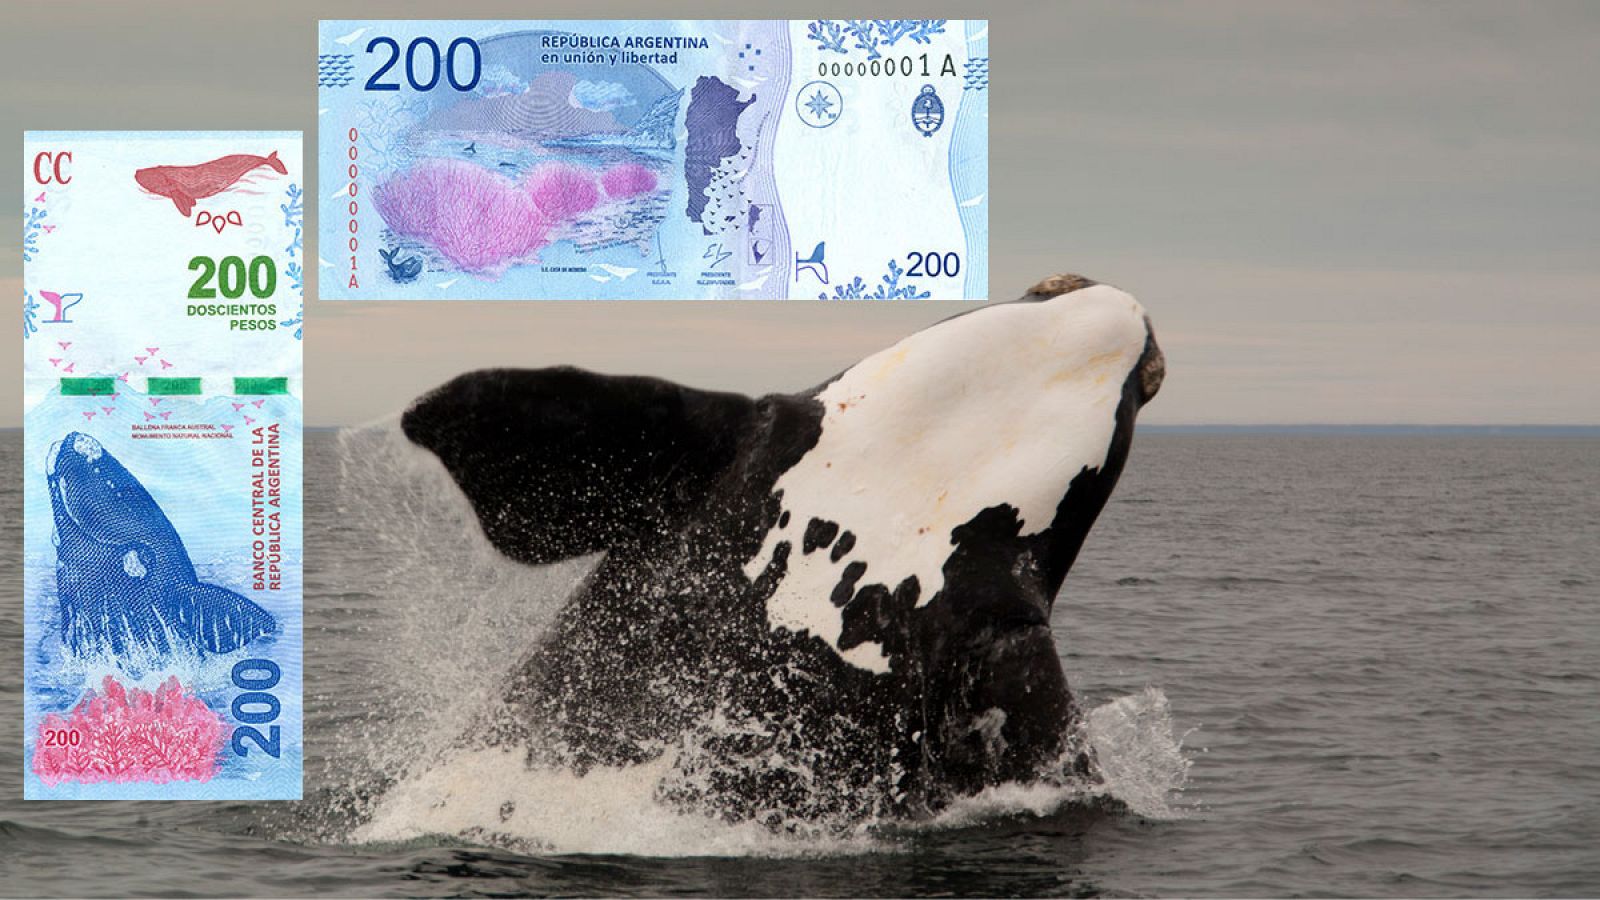 El nuevo billete de 200 pesos impresionado sobre una imagen de una ballena en la Península Valdés, Argentina